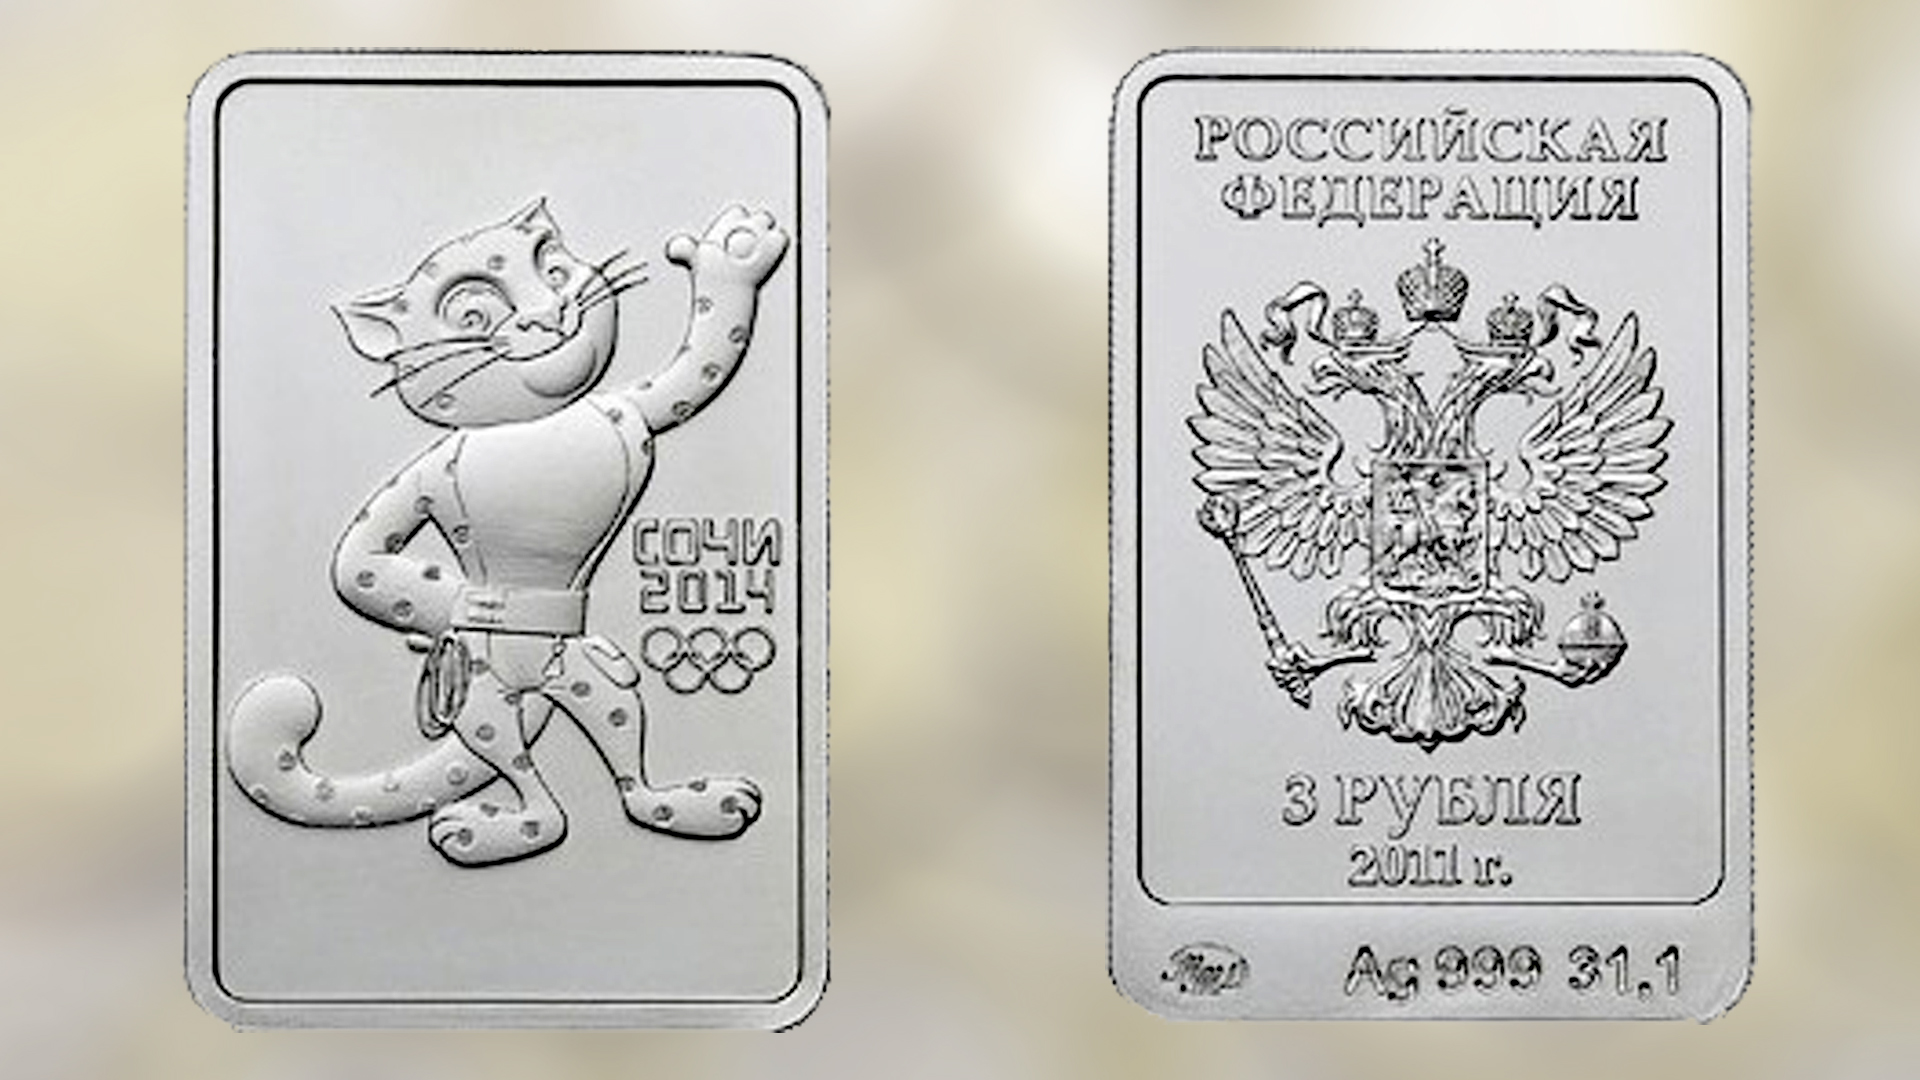 Сочи серебро 3 рубля. Монета «леопард» (серебро, 2011 год);. Серебряная монета три рубля Сочи леопард. Монета 3 рубля 2011 года Сочи 2014. Монеты Сочи 2014 серебро 3 рубля серебро.